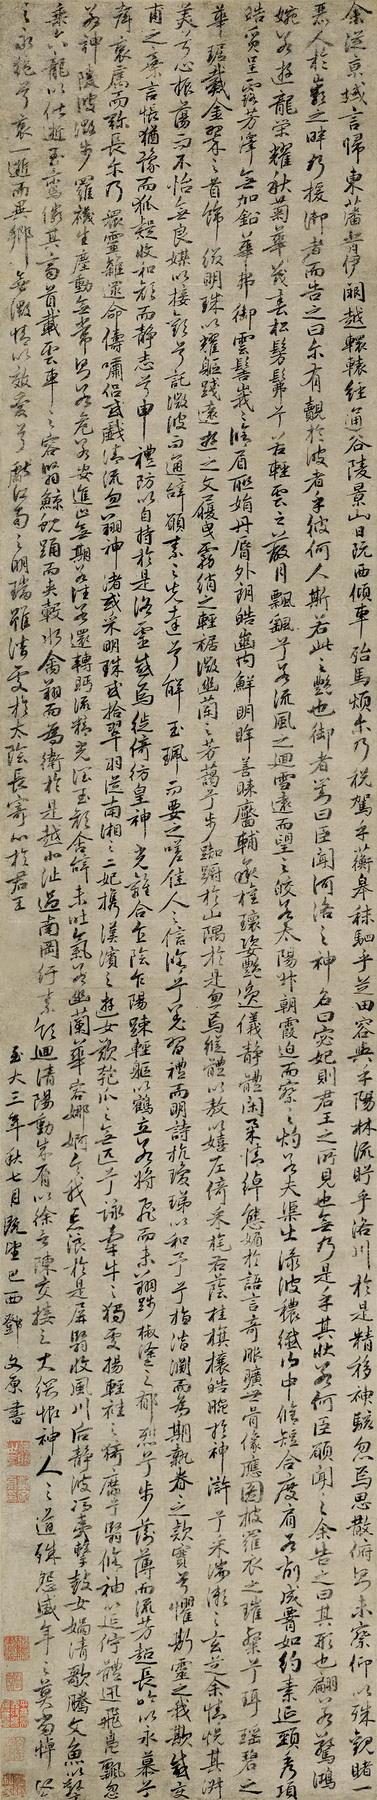 邓文原(1258-1328 行书《洛神赋》